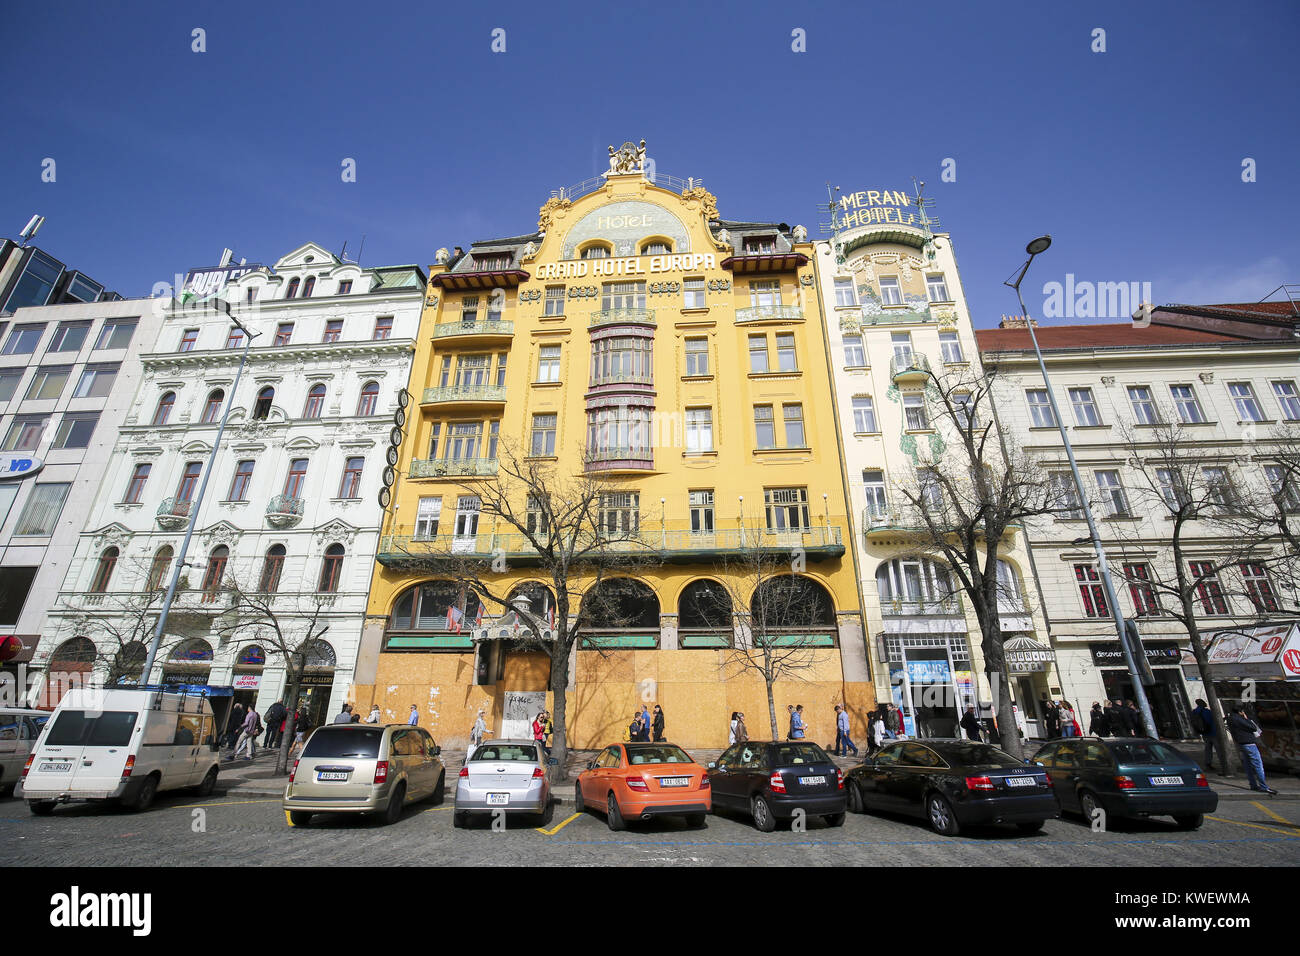 Grand Hotel Europa ist eine berühmte Jugendstil Hotel am Wenzelsplatz im Zentrum von Prag, Tschechien Stockfoto